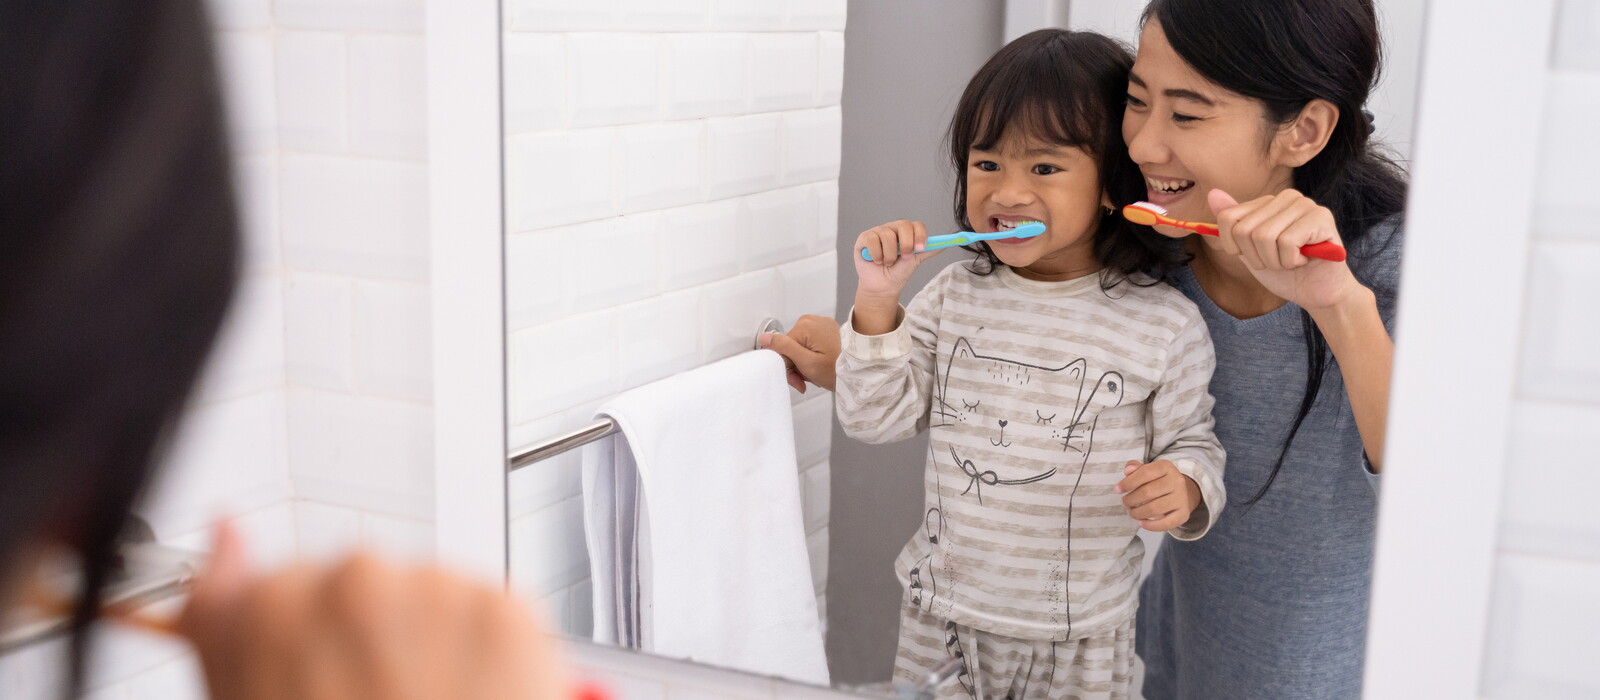 Tips Menjaga Kesehatan Gigi Anak Usia Dini yang Bisa Orangtua Terapkan.jpg